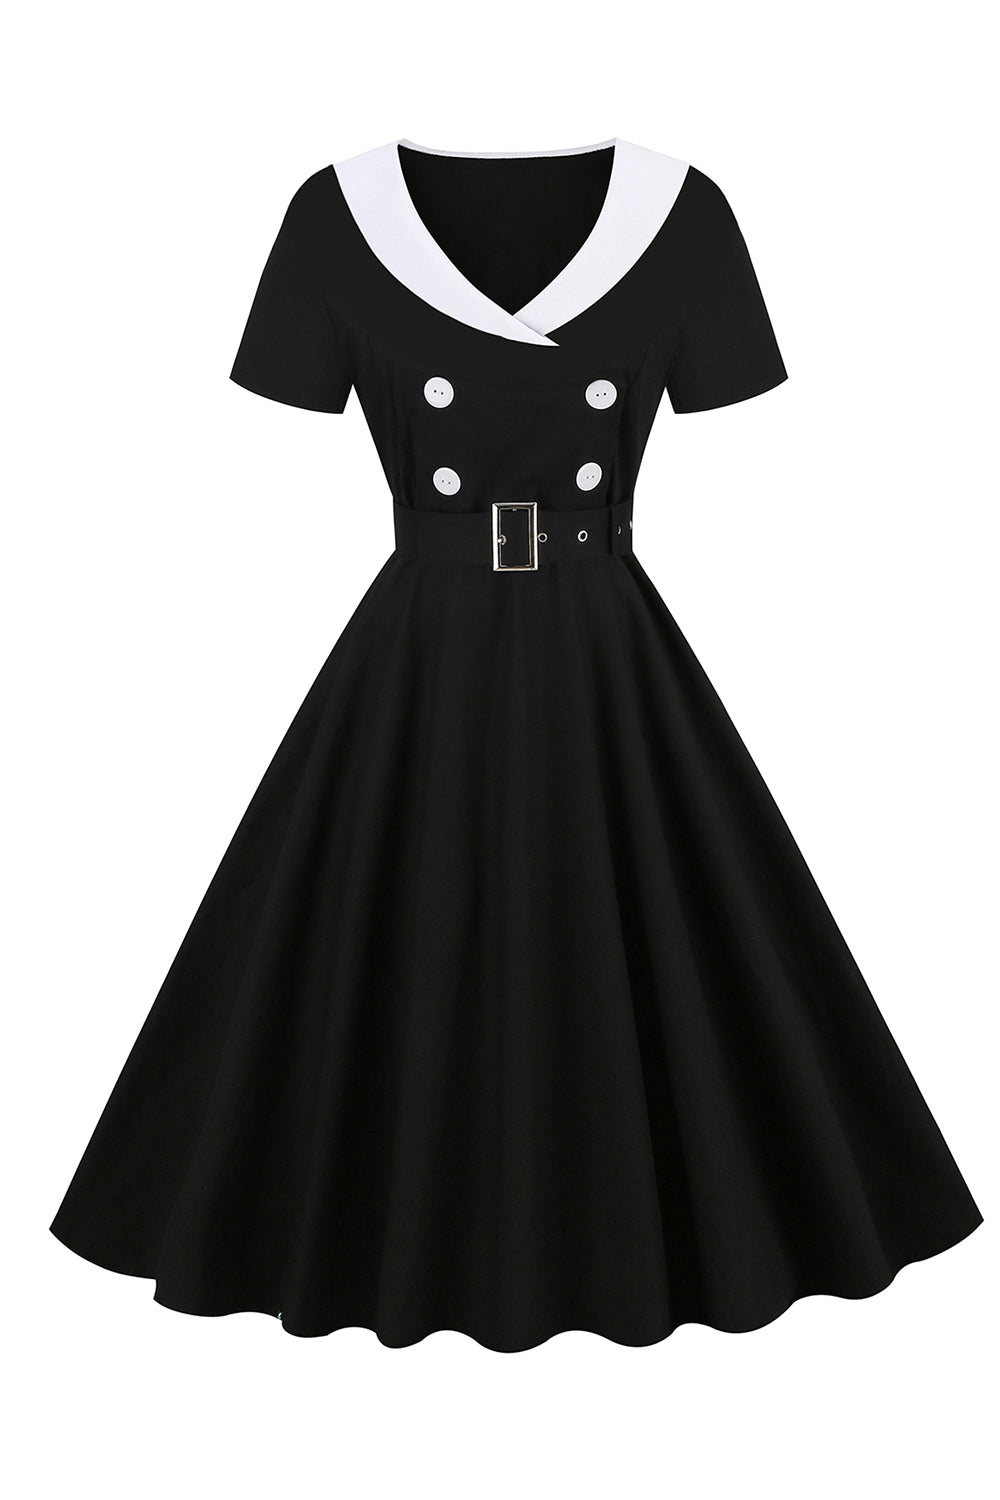 Vestido preto de balanço dos anos 50 com cinto